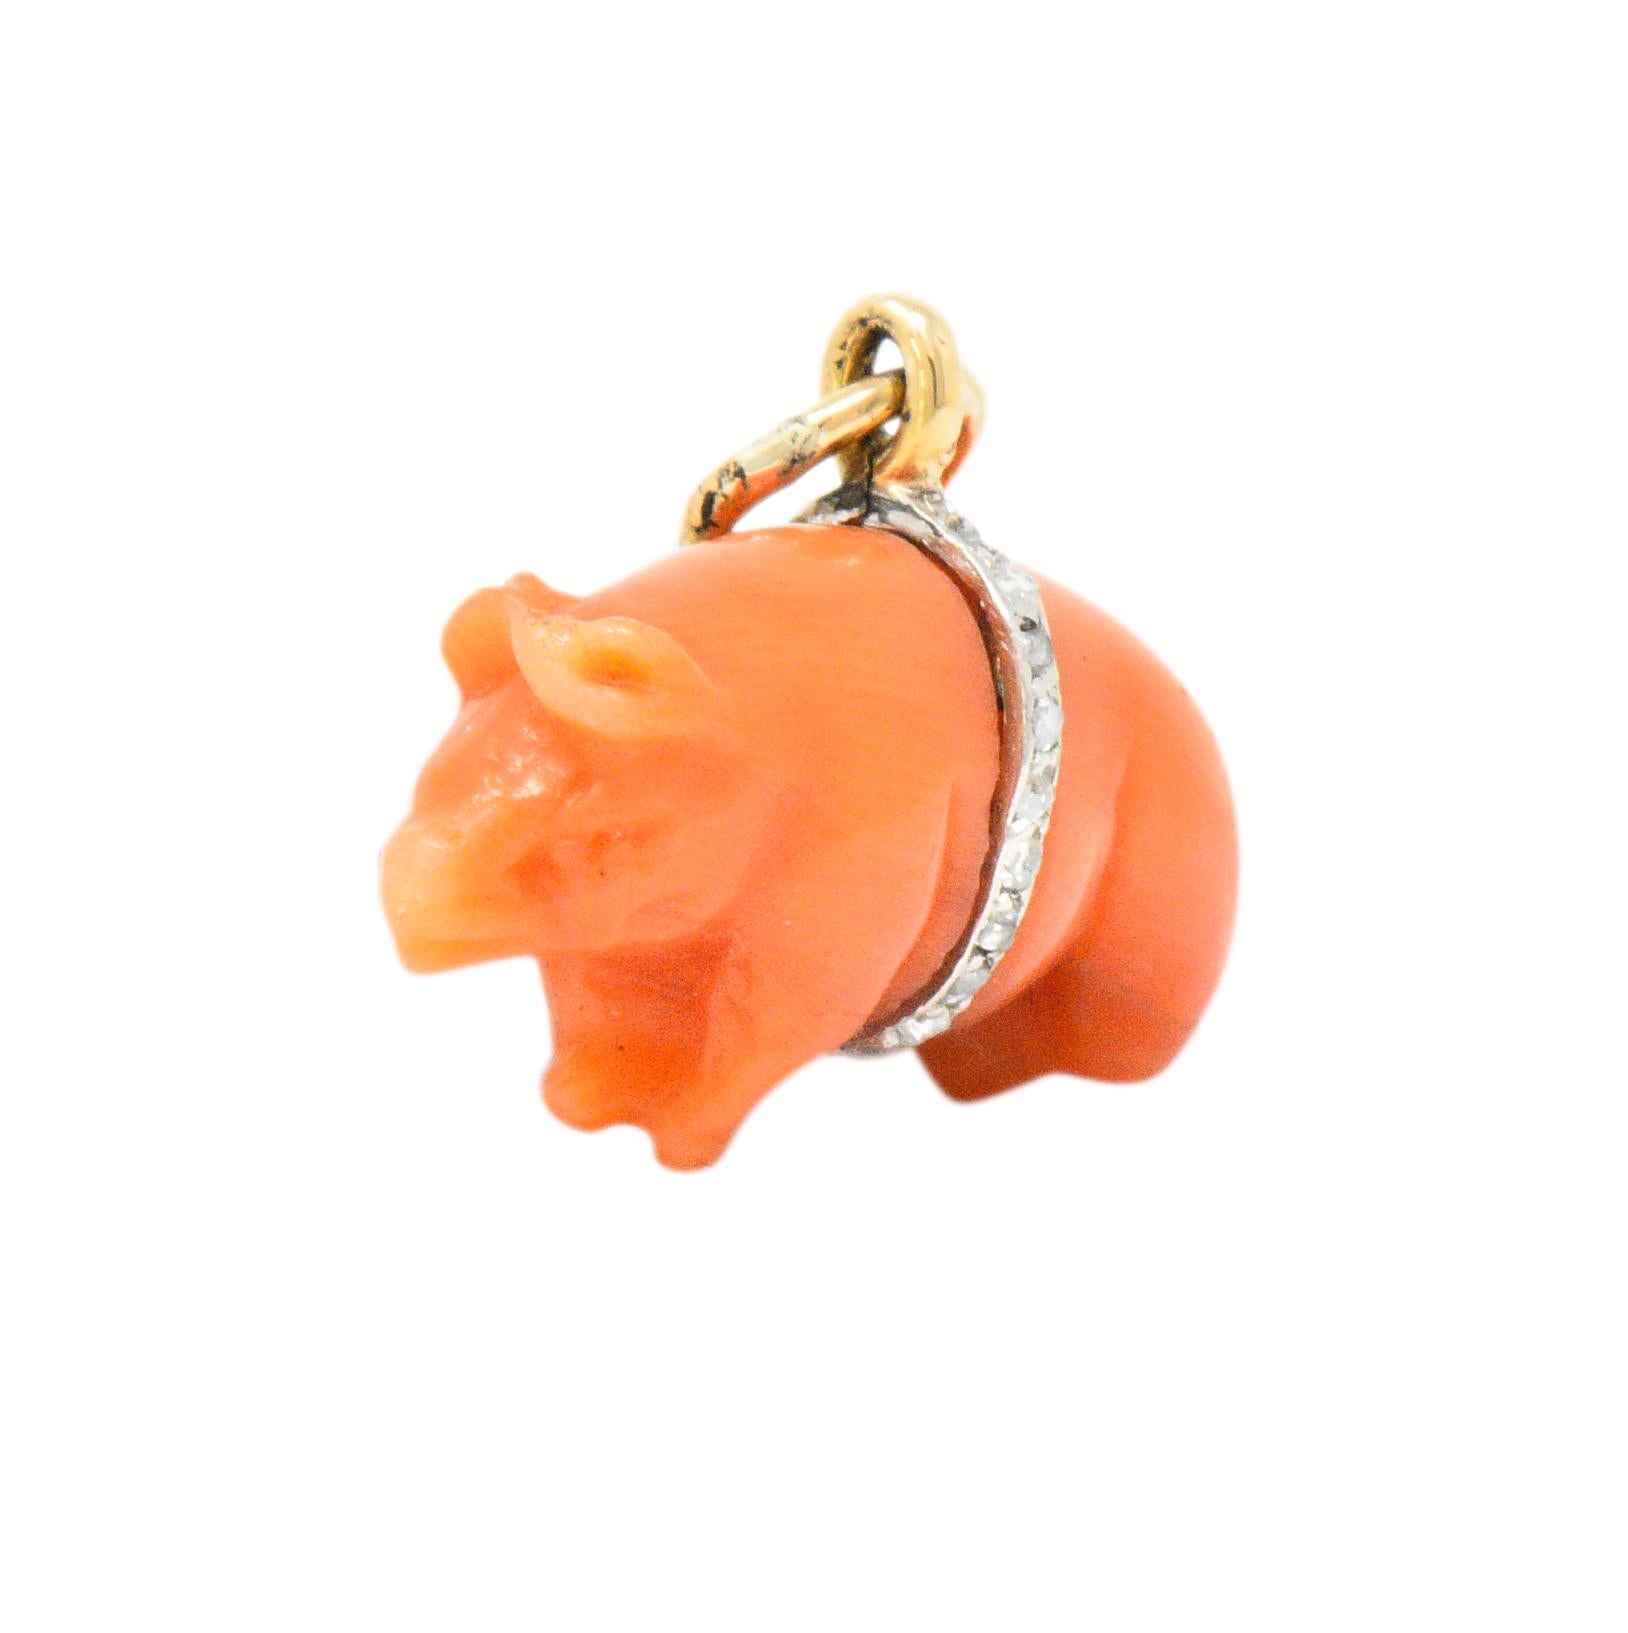 Charm besteht aus leuchtend rosa-orangefarbenen Korallen

Aufwändig geschnitzt:: um ein Schwein darzustellen

Halbiert durch ein Goldband um seinen Bauch:: das vollständig mit Diamanten im Rosenschliff besetzt ist (zwei fehlen)

Getestet als 18